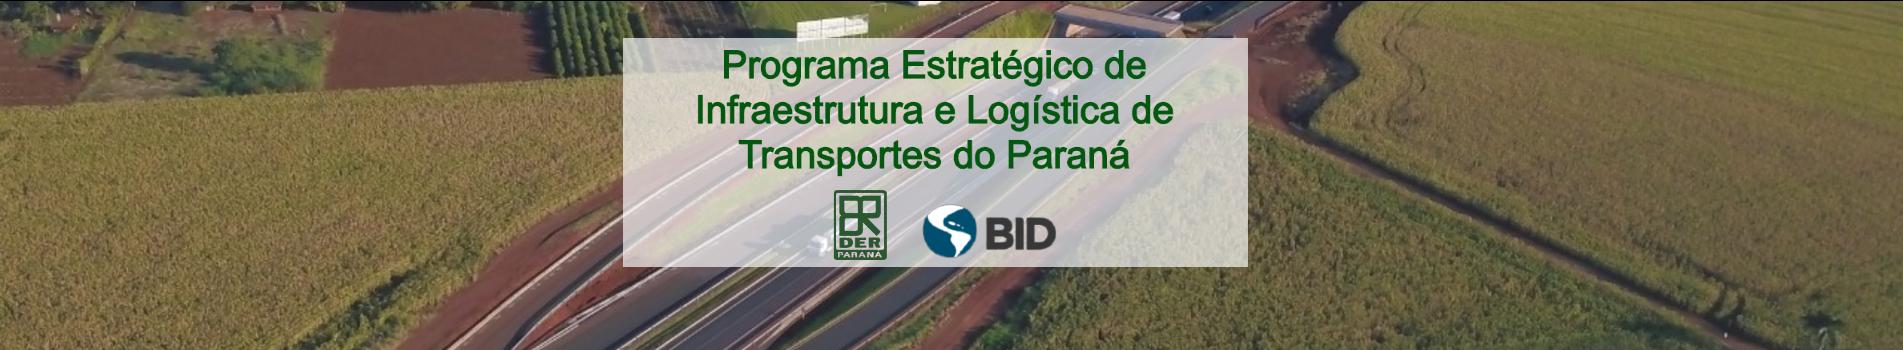 Programa Estratégico de Infraestrutura e Logística de Transportes do Paraná